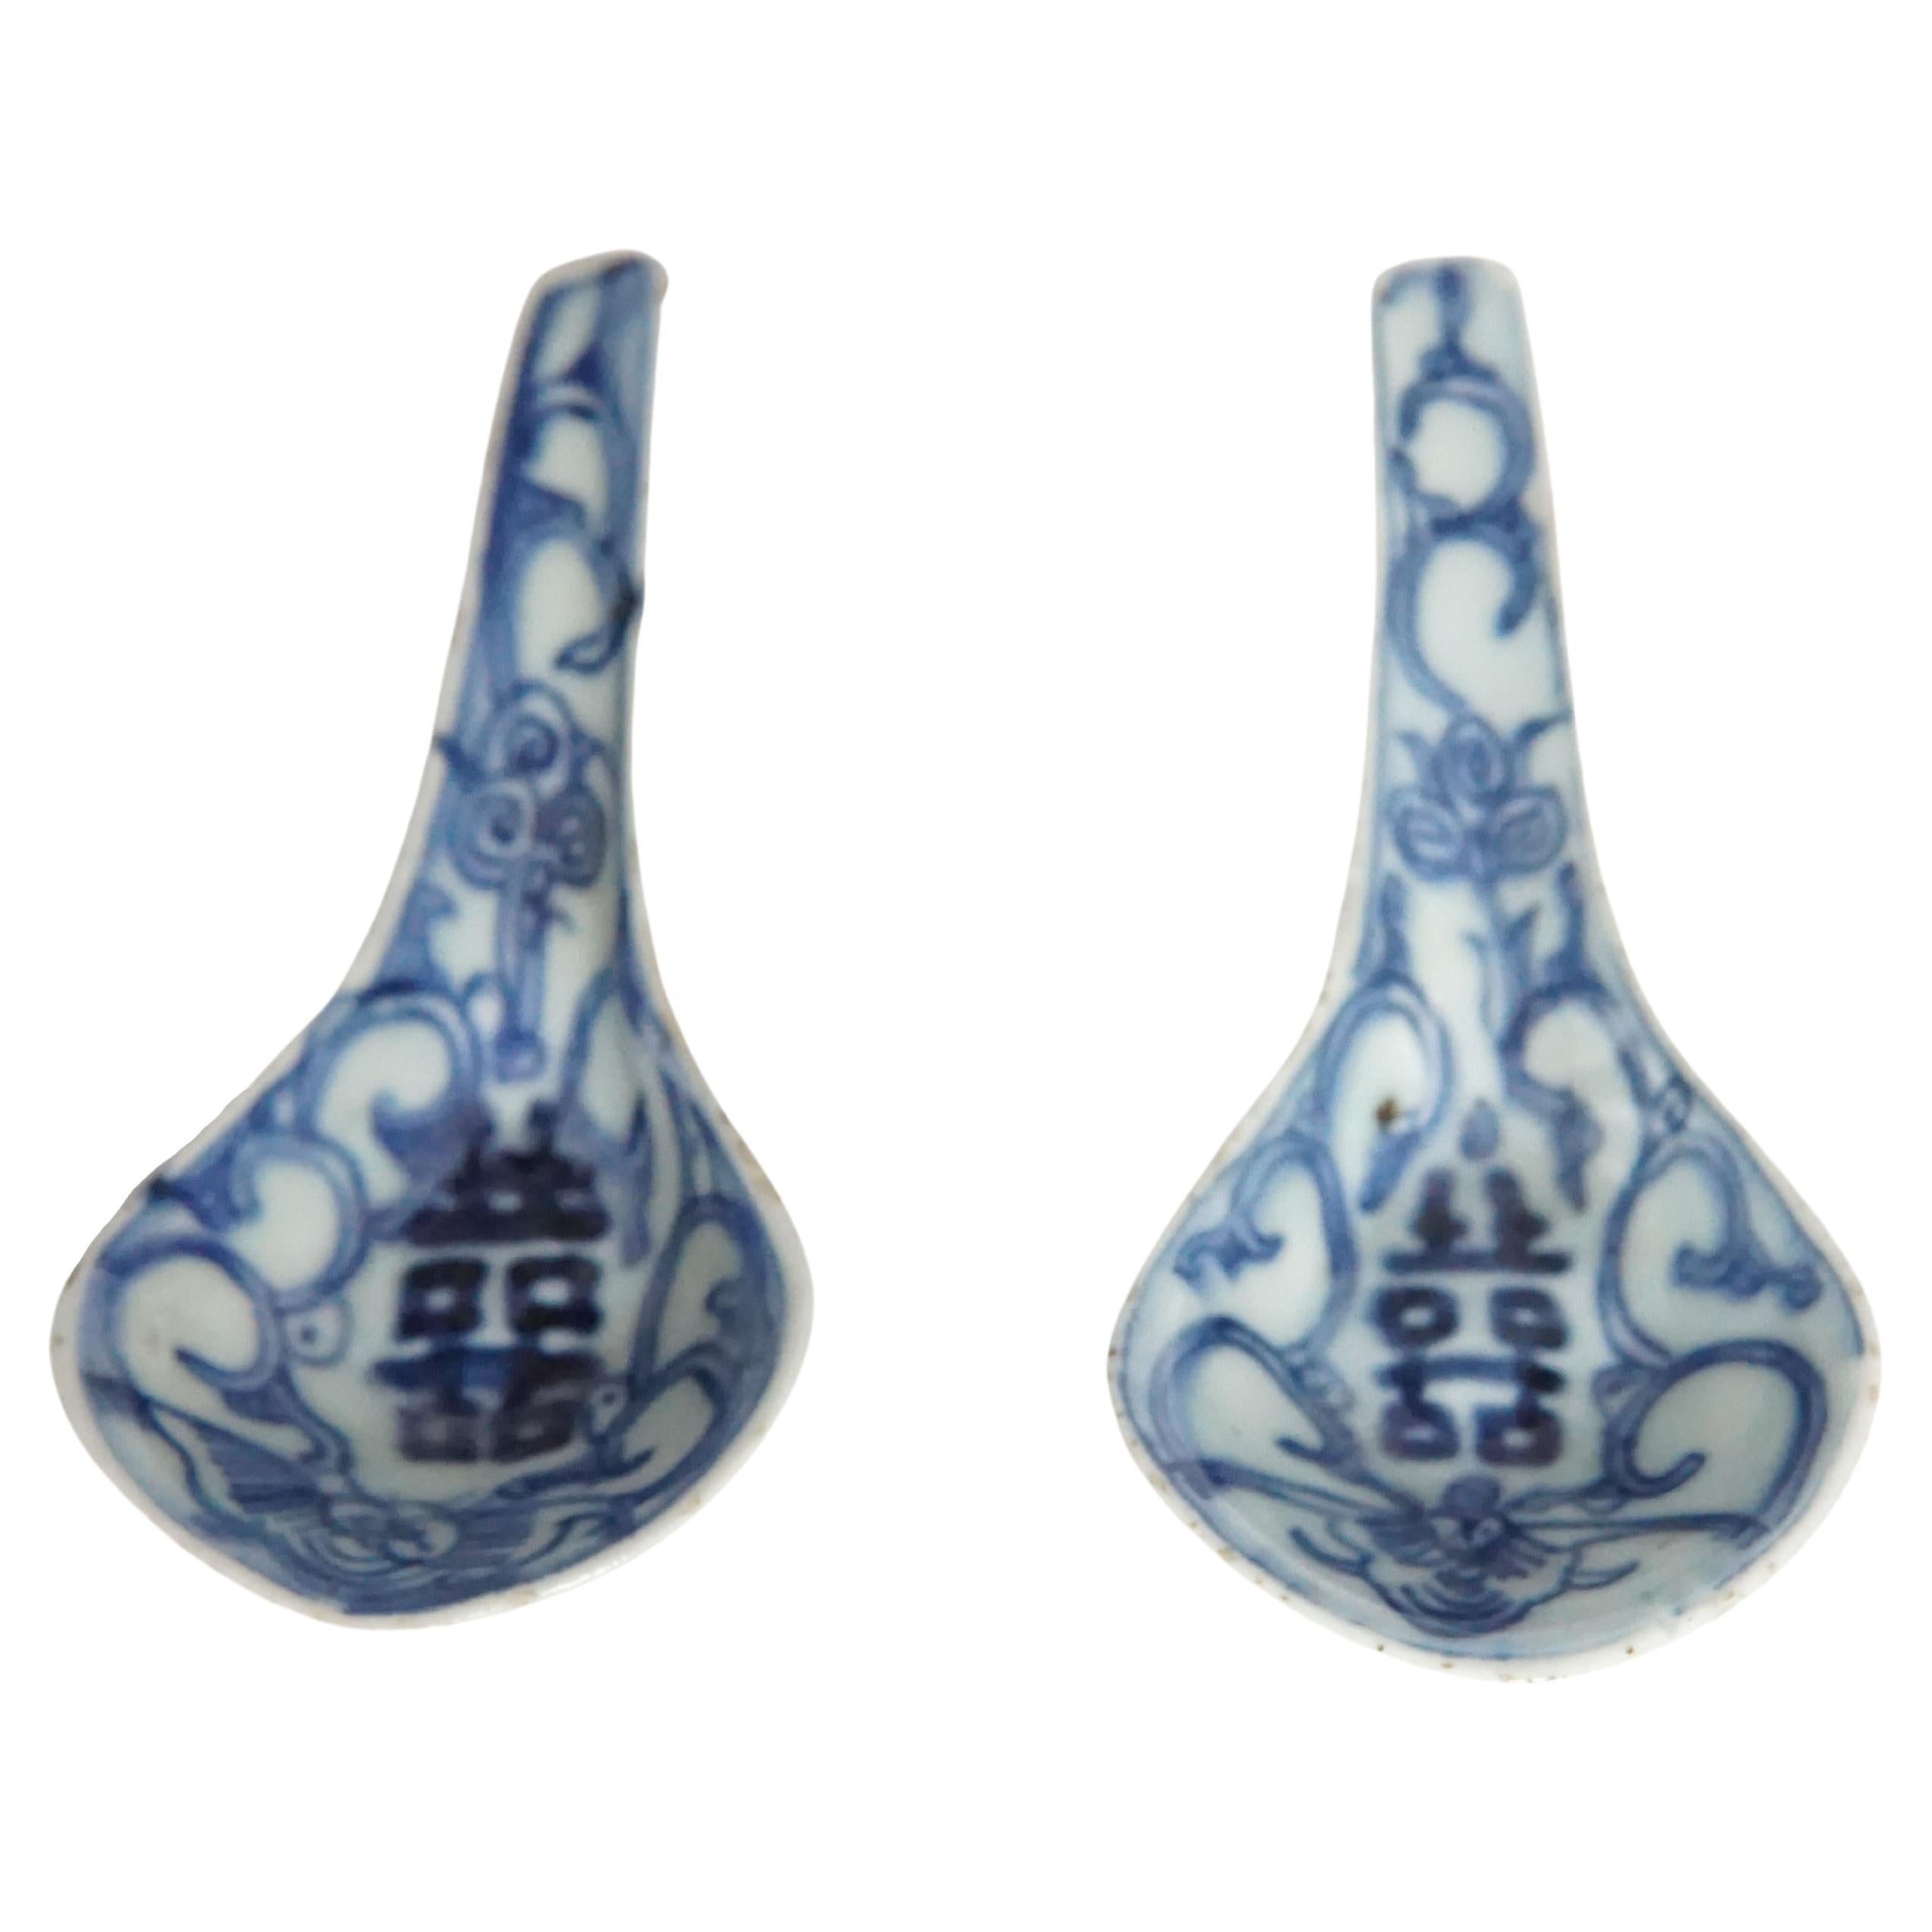 Ein wunderschön handbemaltes Paar chinesischer blau-weißer Keramiklöffel um 1850. Sie tragen doppelte Glückszeichen und eine wunderschöne, skulpturale Form. Ein großartiges Stück chinesischer Geschichte. 
 